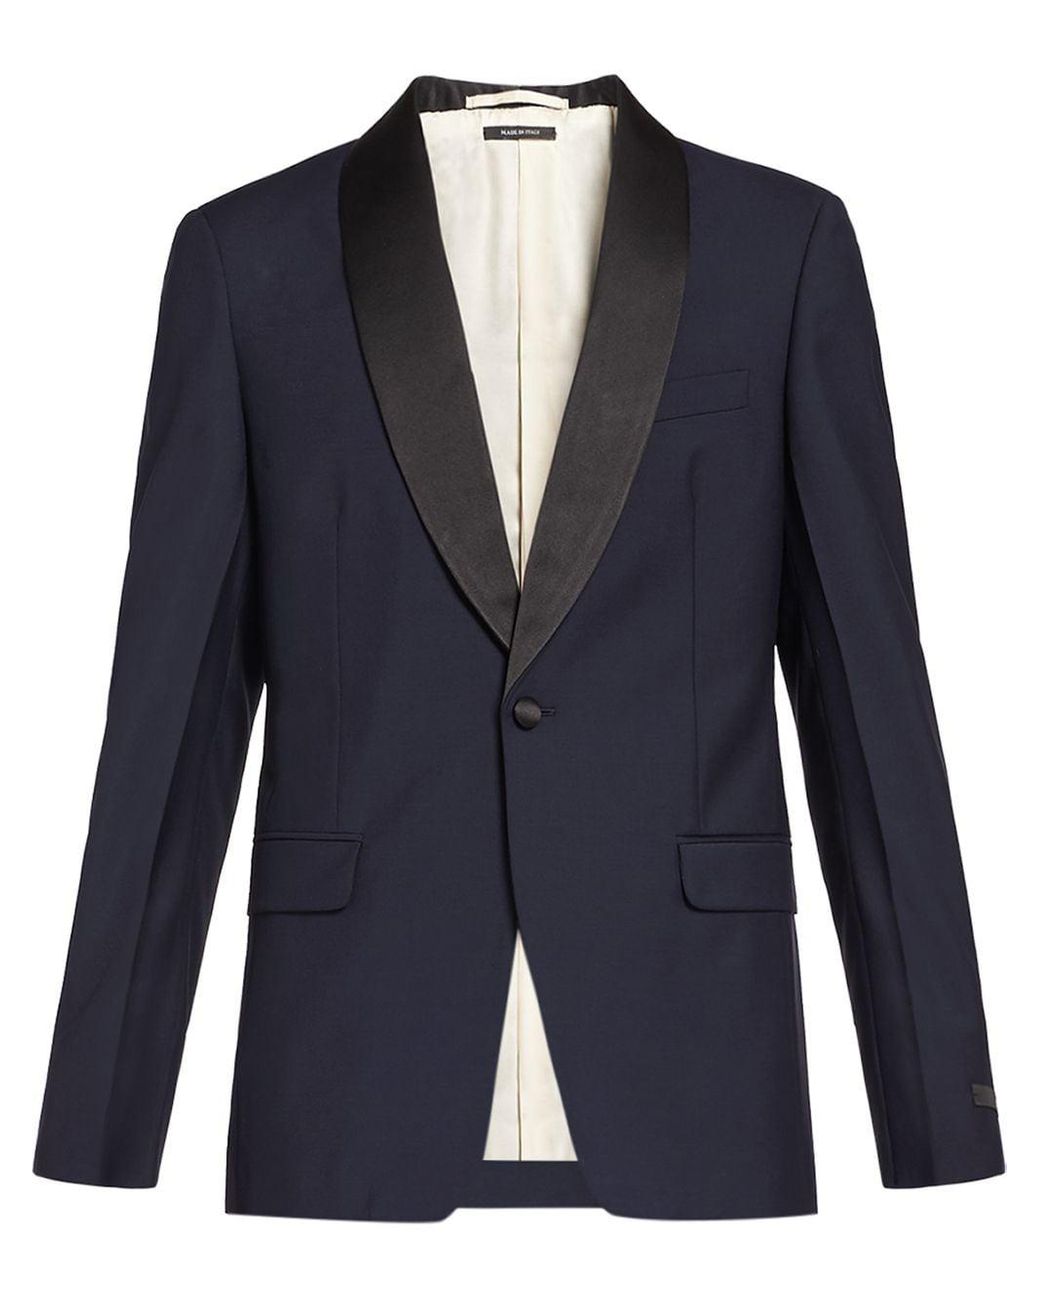 Prada Wool Tuxedo Dinner Suit in Blue for Men - Lyst